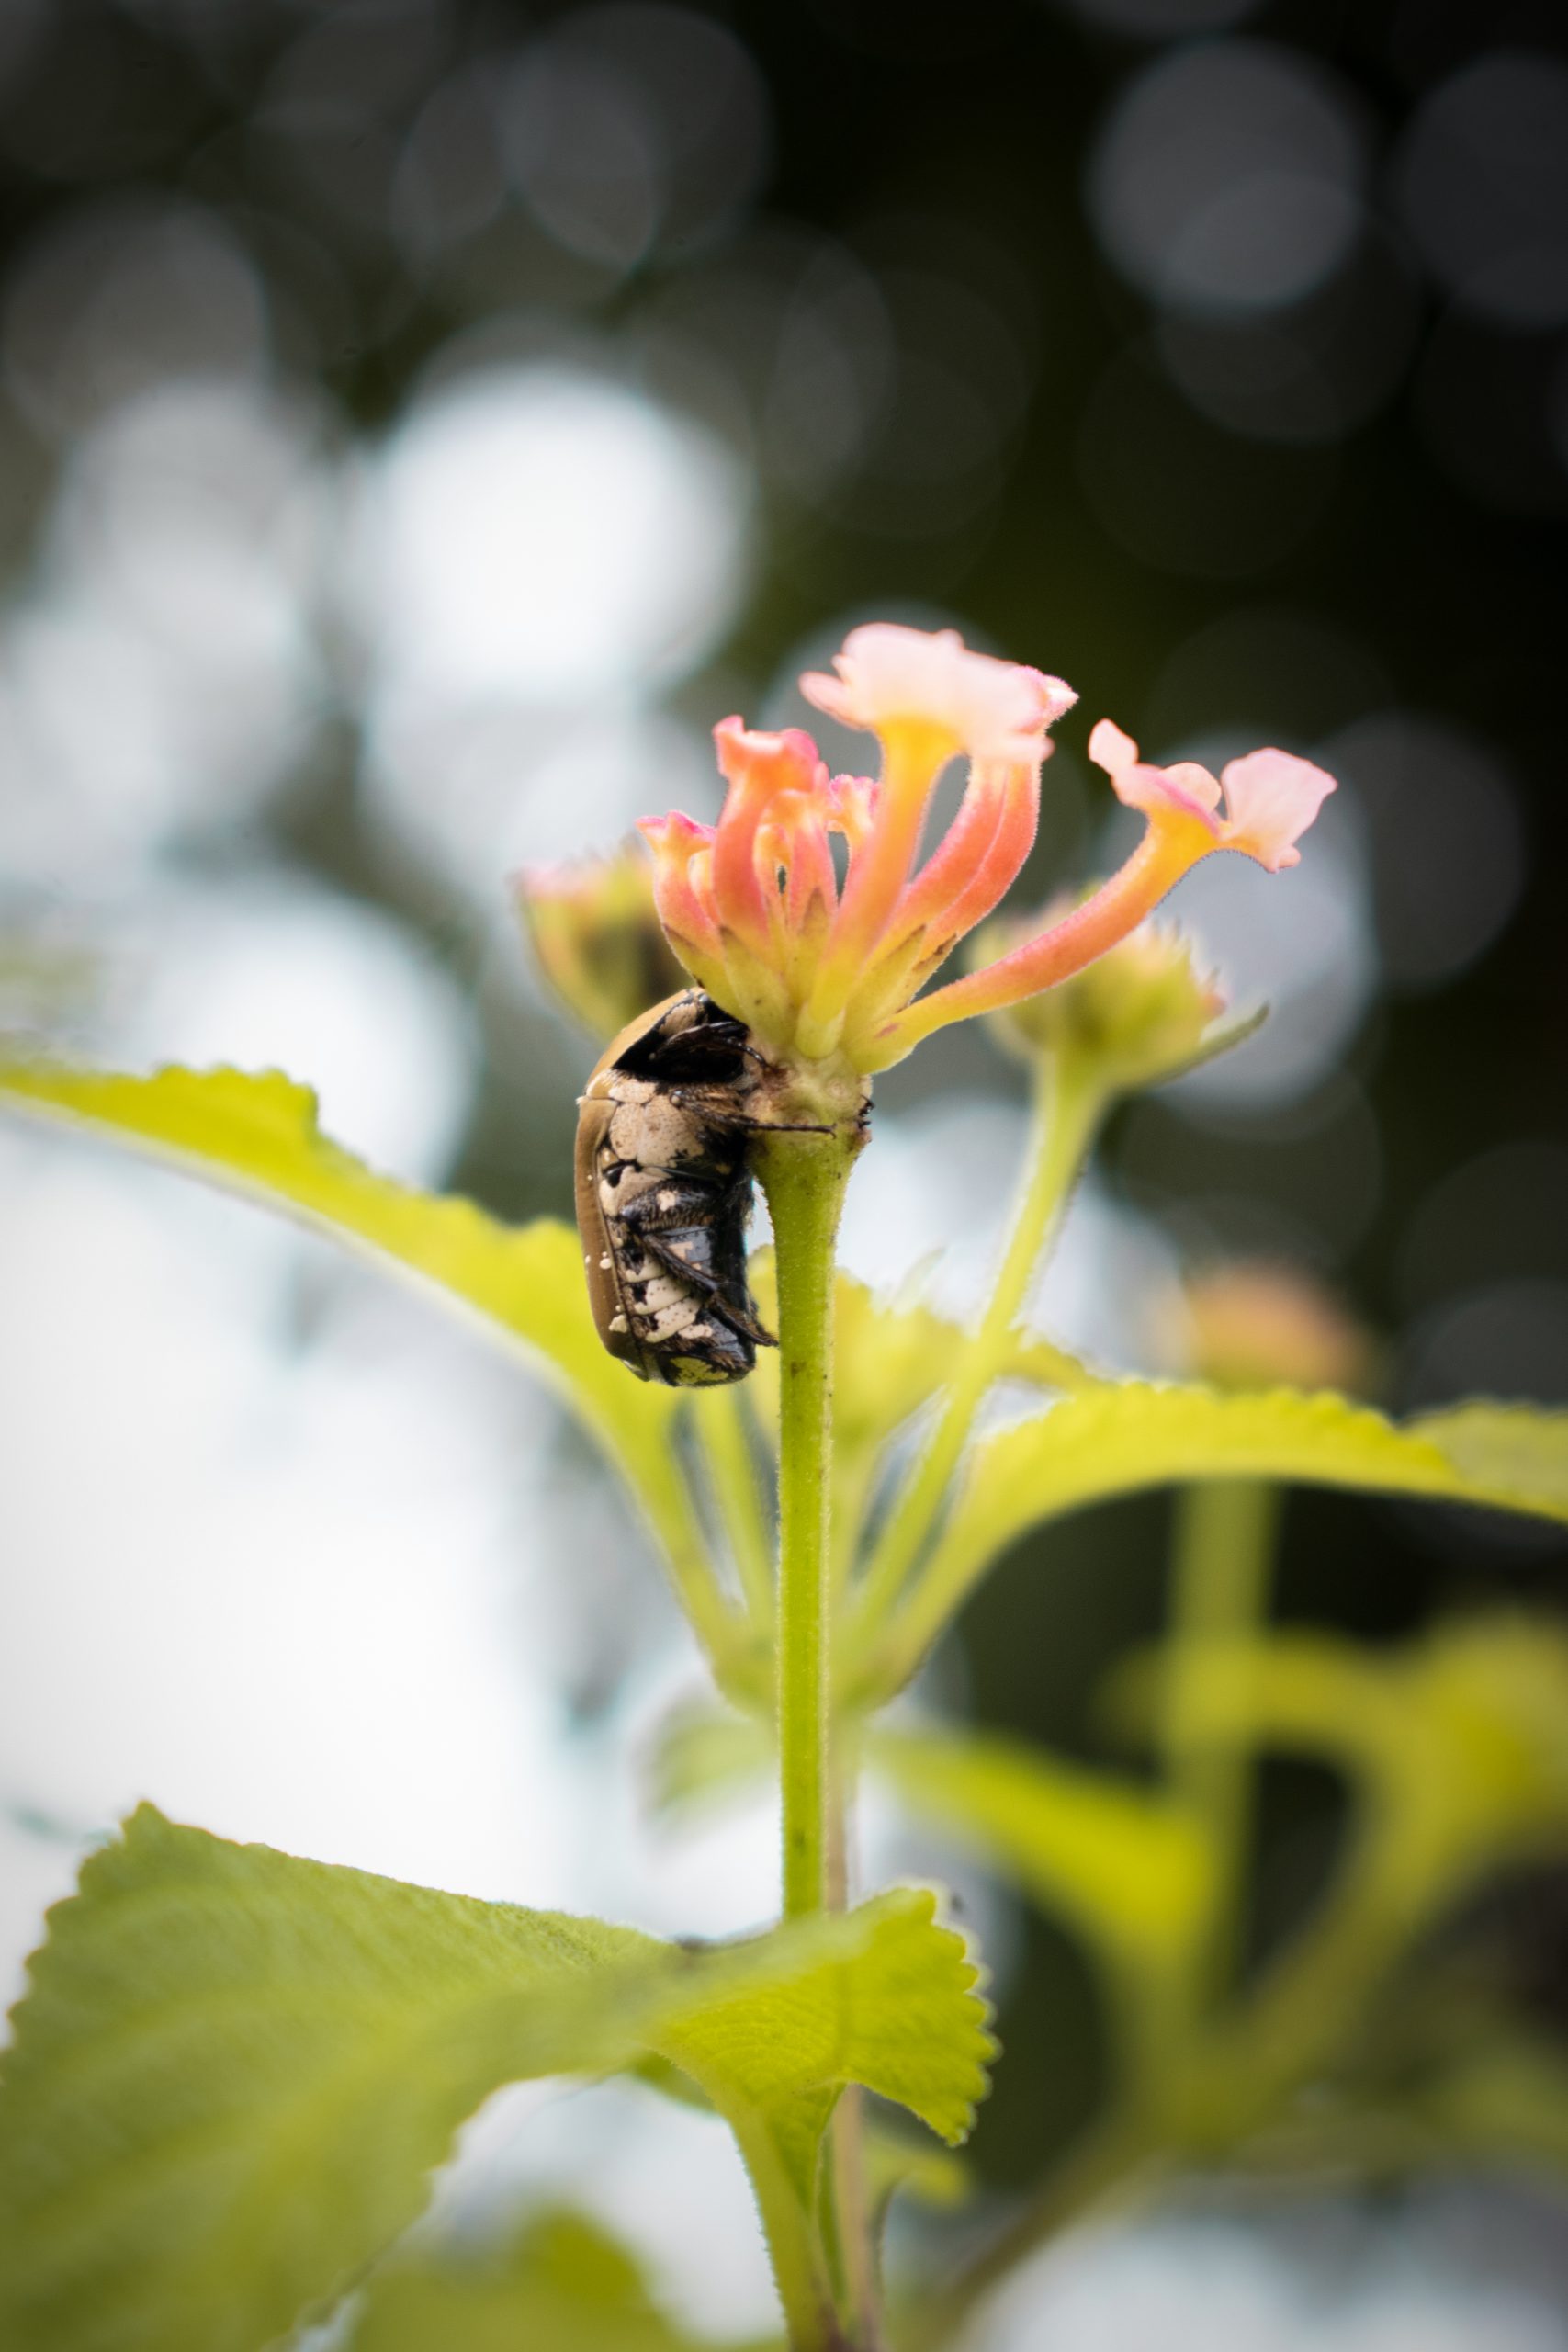 A Golden beetle on a flower.